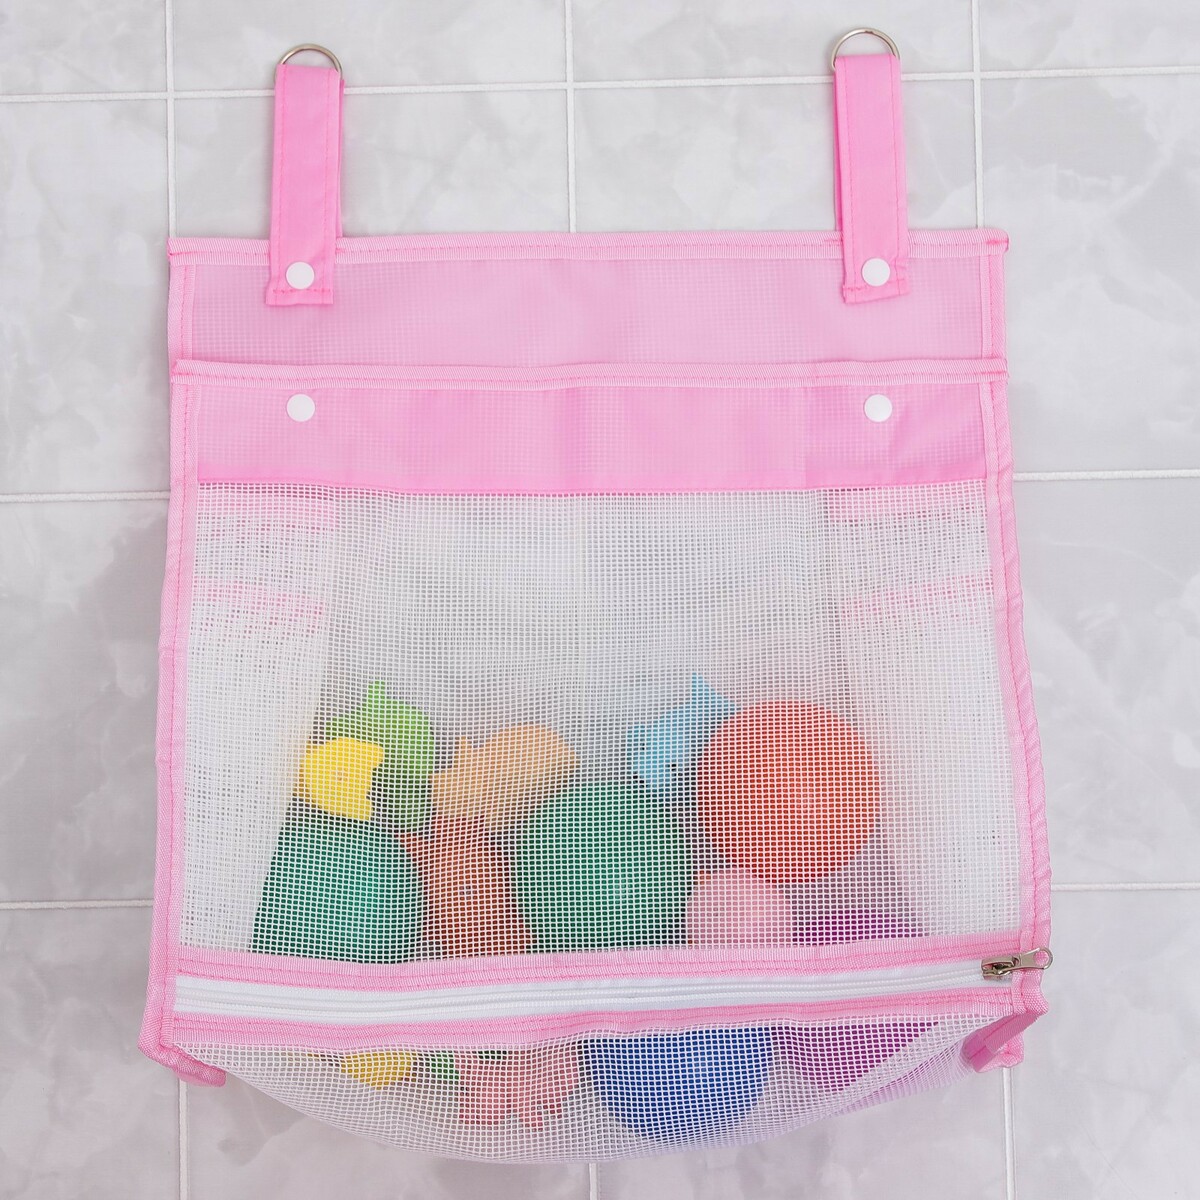 Сетка для хранения игрушек в ванной, цвет розовый органайзер для игрушек и банных принадлежностей roxy kids розовый th 709p